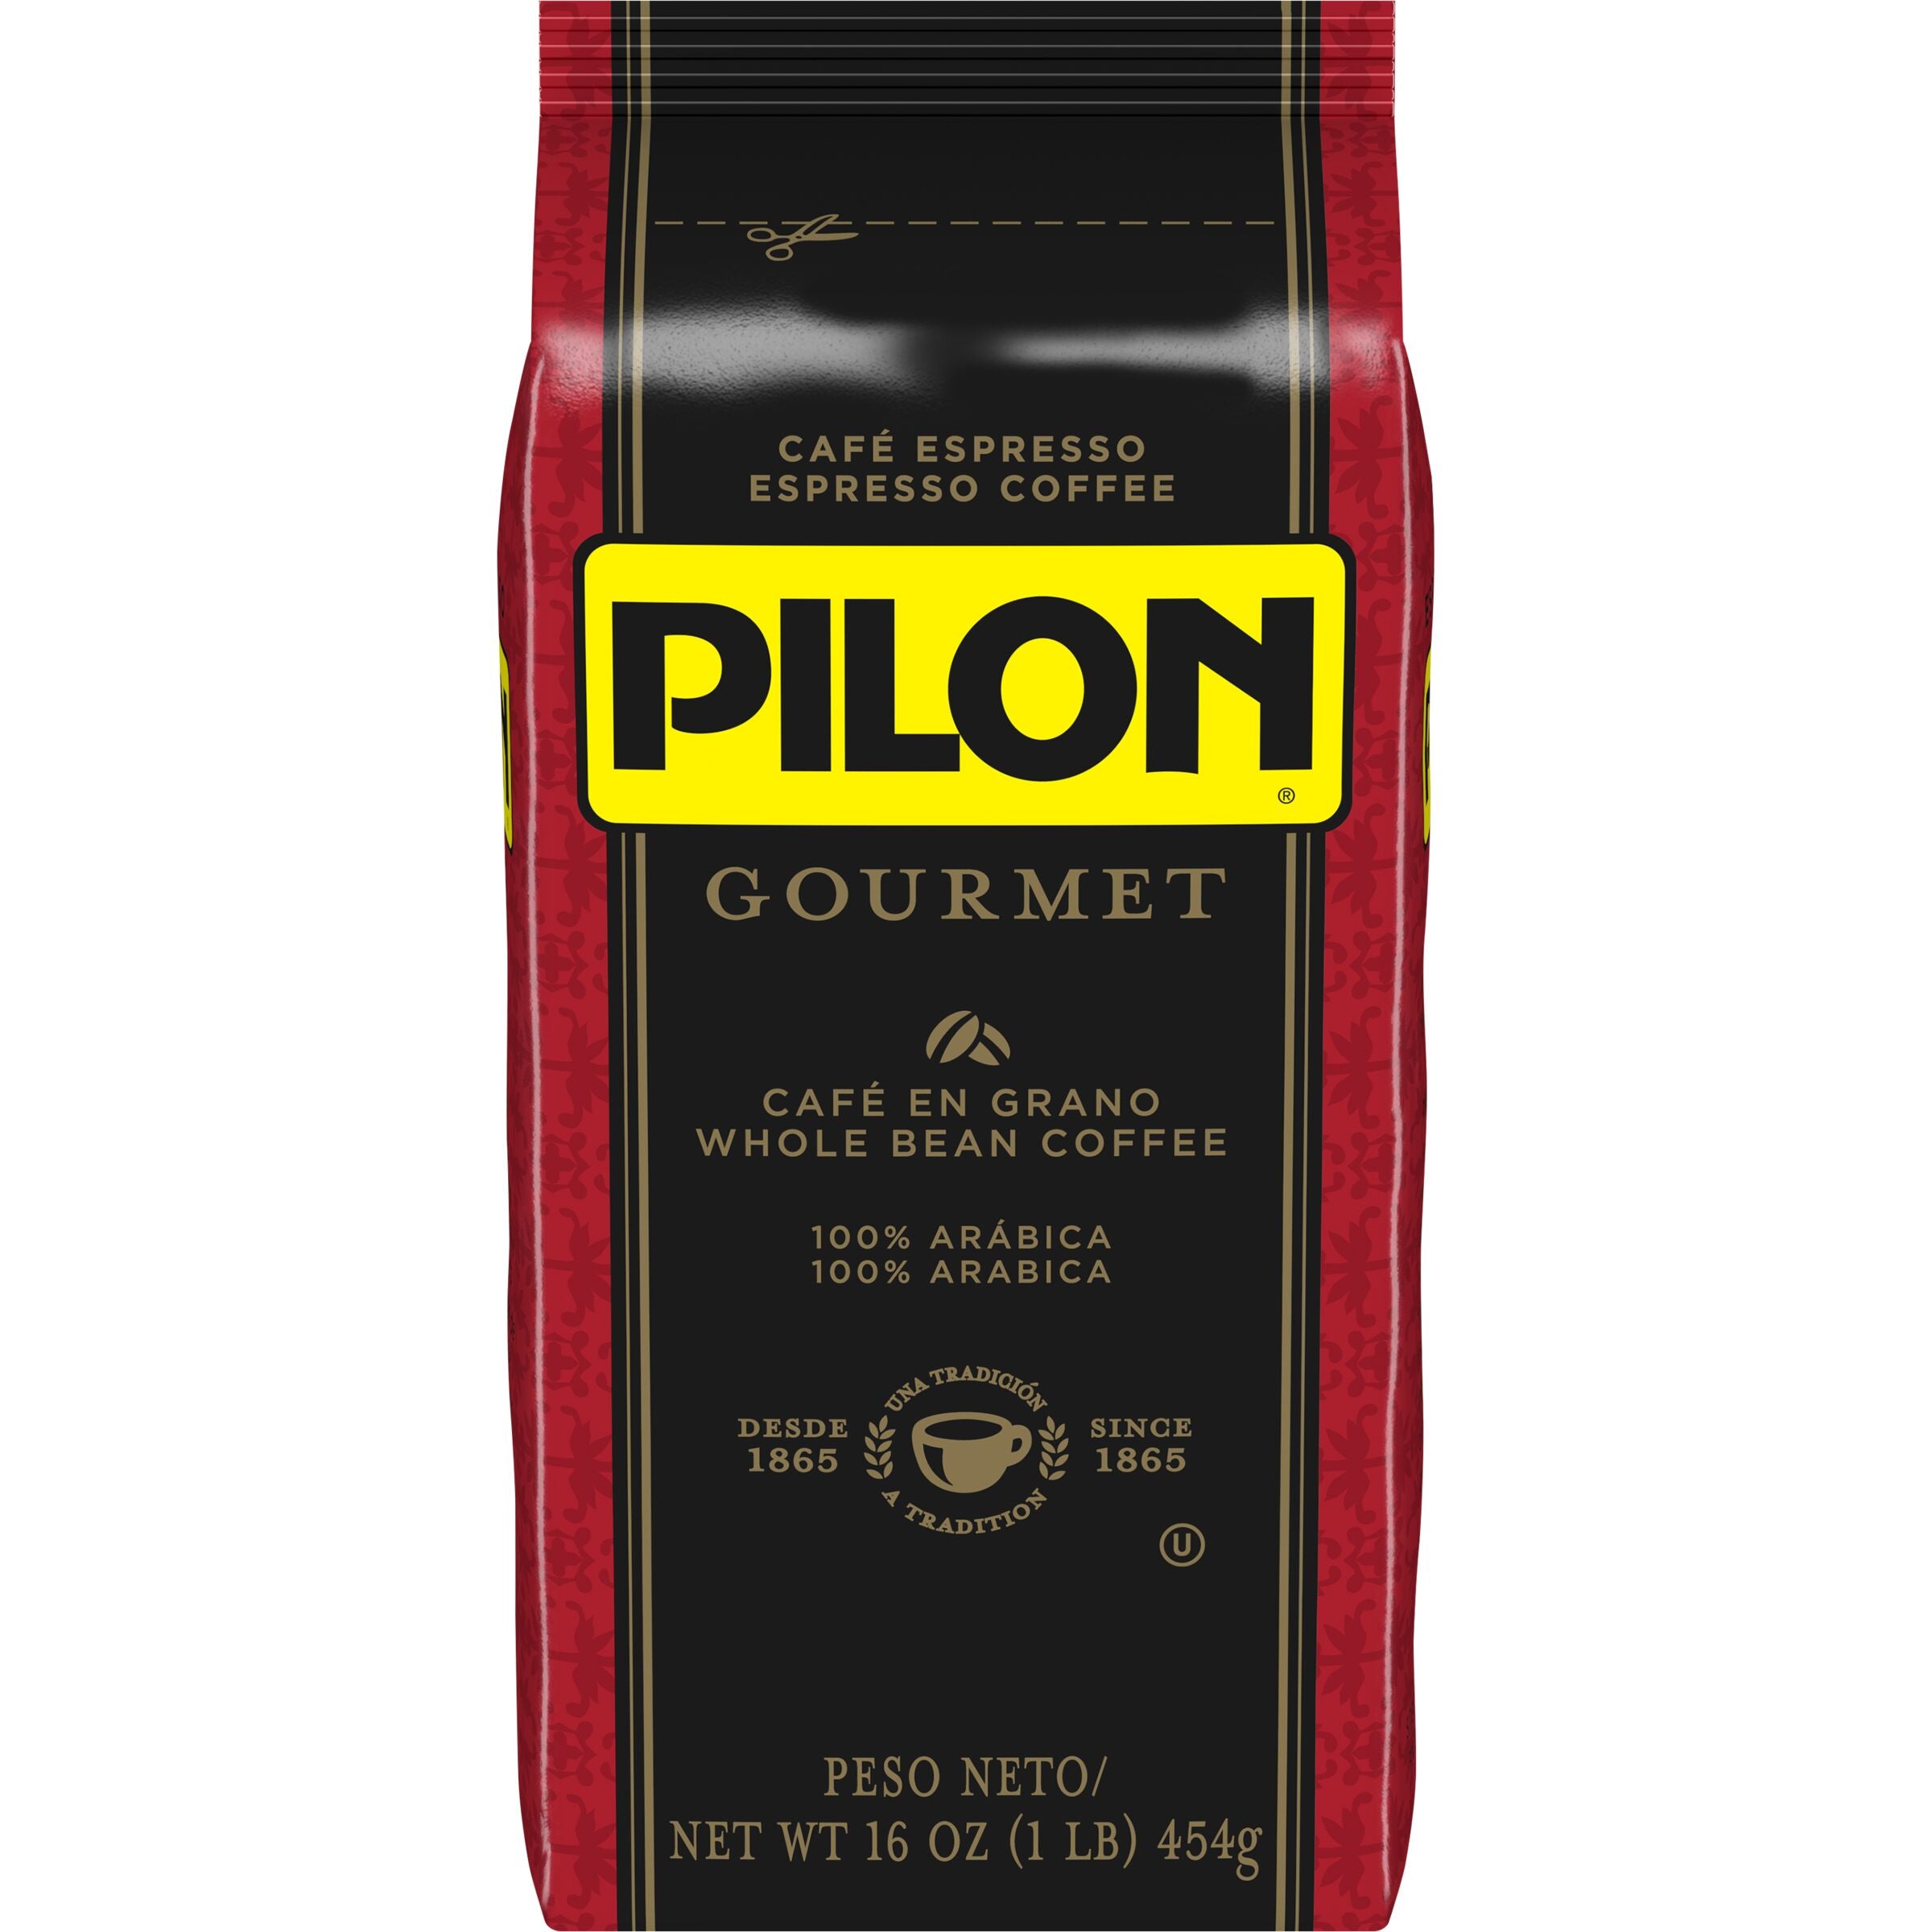 Cafe Pilon Gourmet Espresso, Whole Bean Coffee Bag, 16 oz